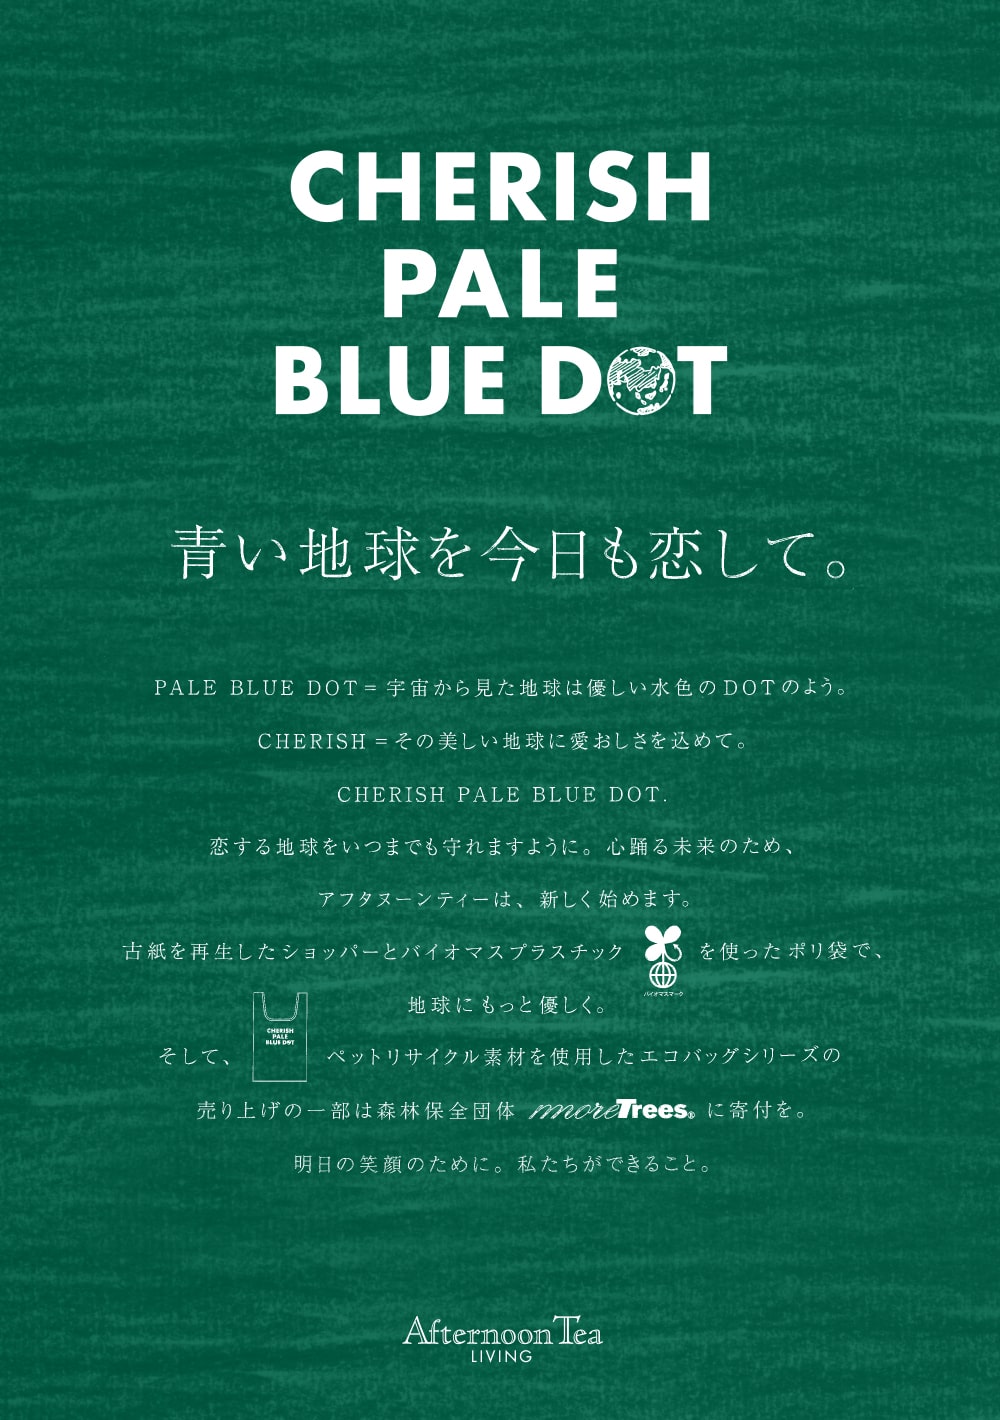 青い地球を今日も恋して 6 10 新プロジェクト Cherish Pale Blue Dot がスタート Afternoon Tea